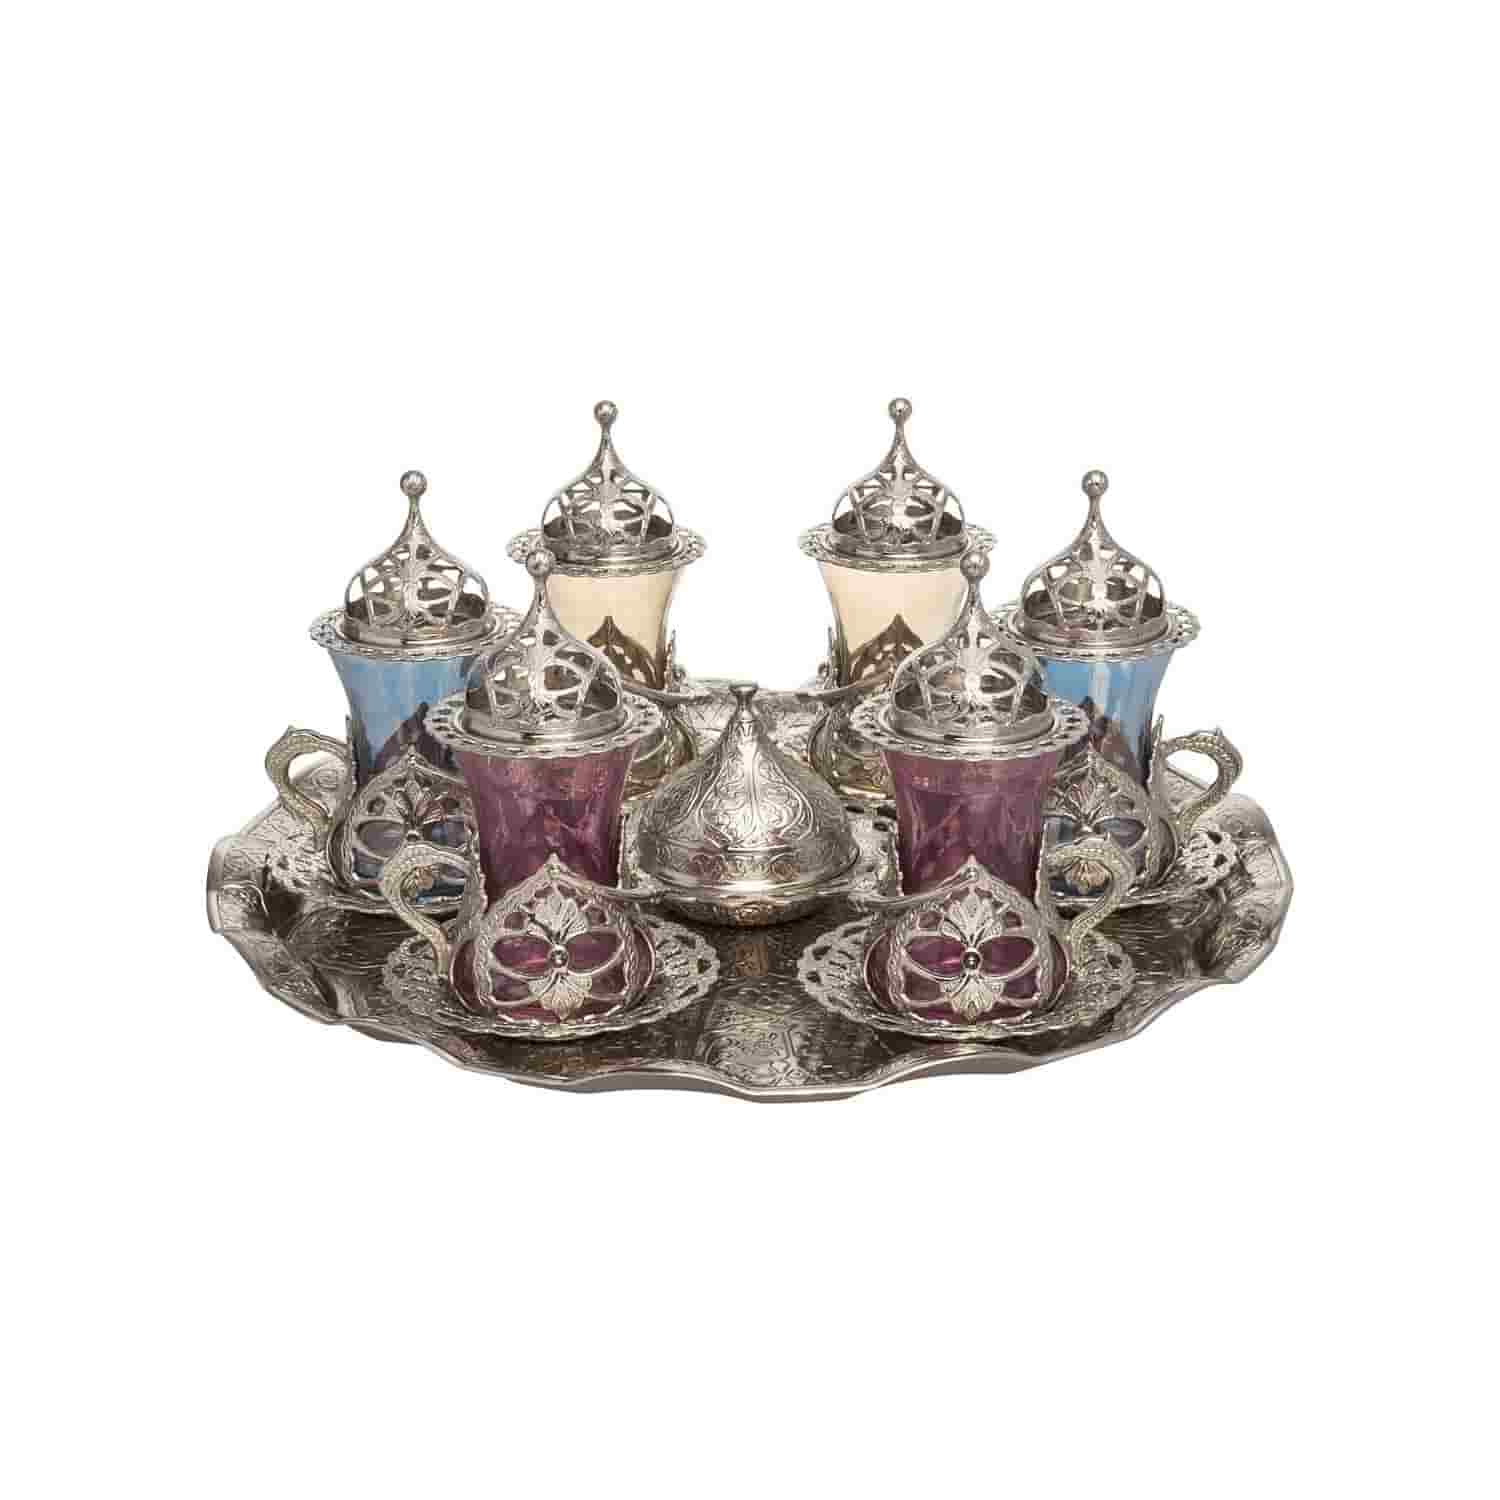 Luxurious Turkish Tea Cups set